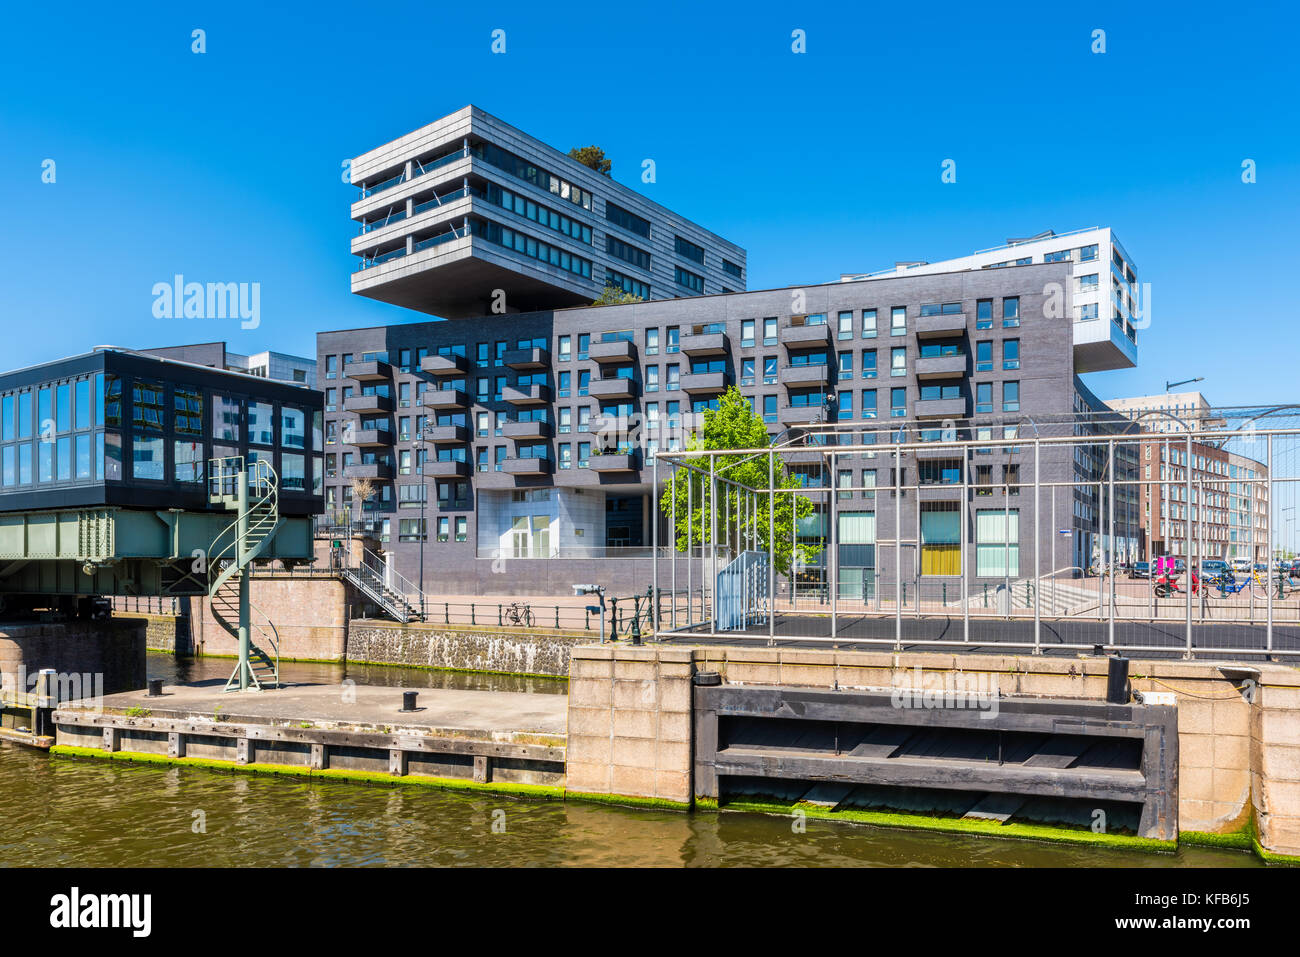 Des appartements modernes dans le quartier d'Amsterdam Pays-Bas westerdok Banque D'Images